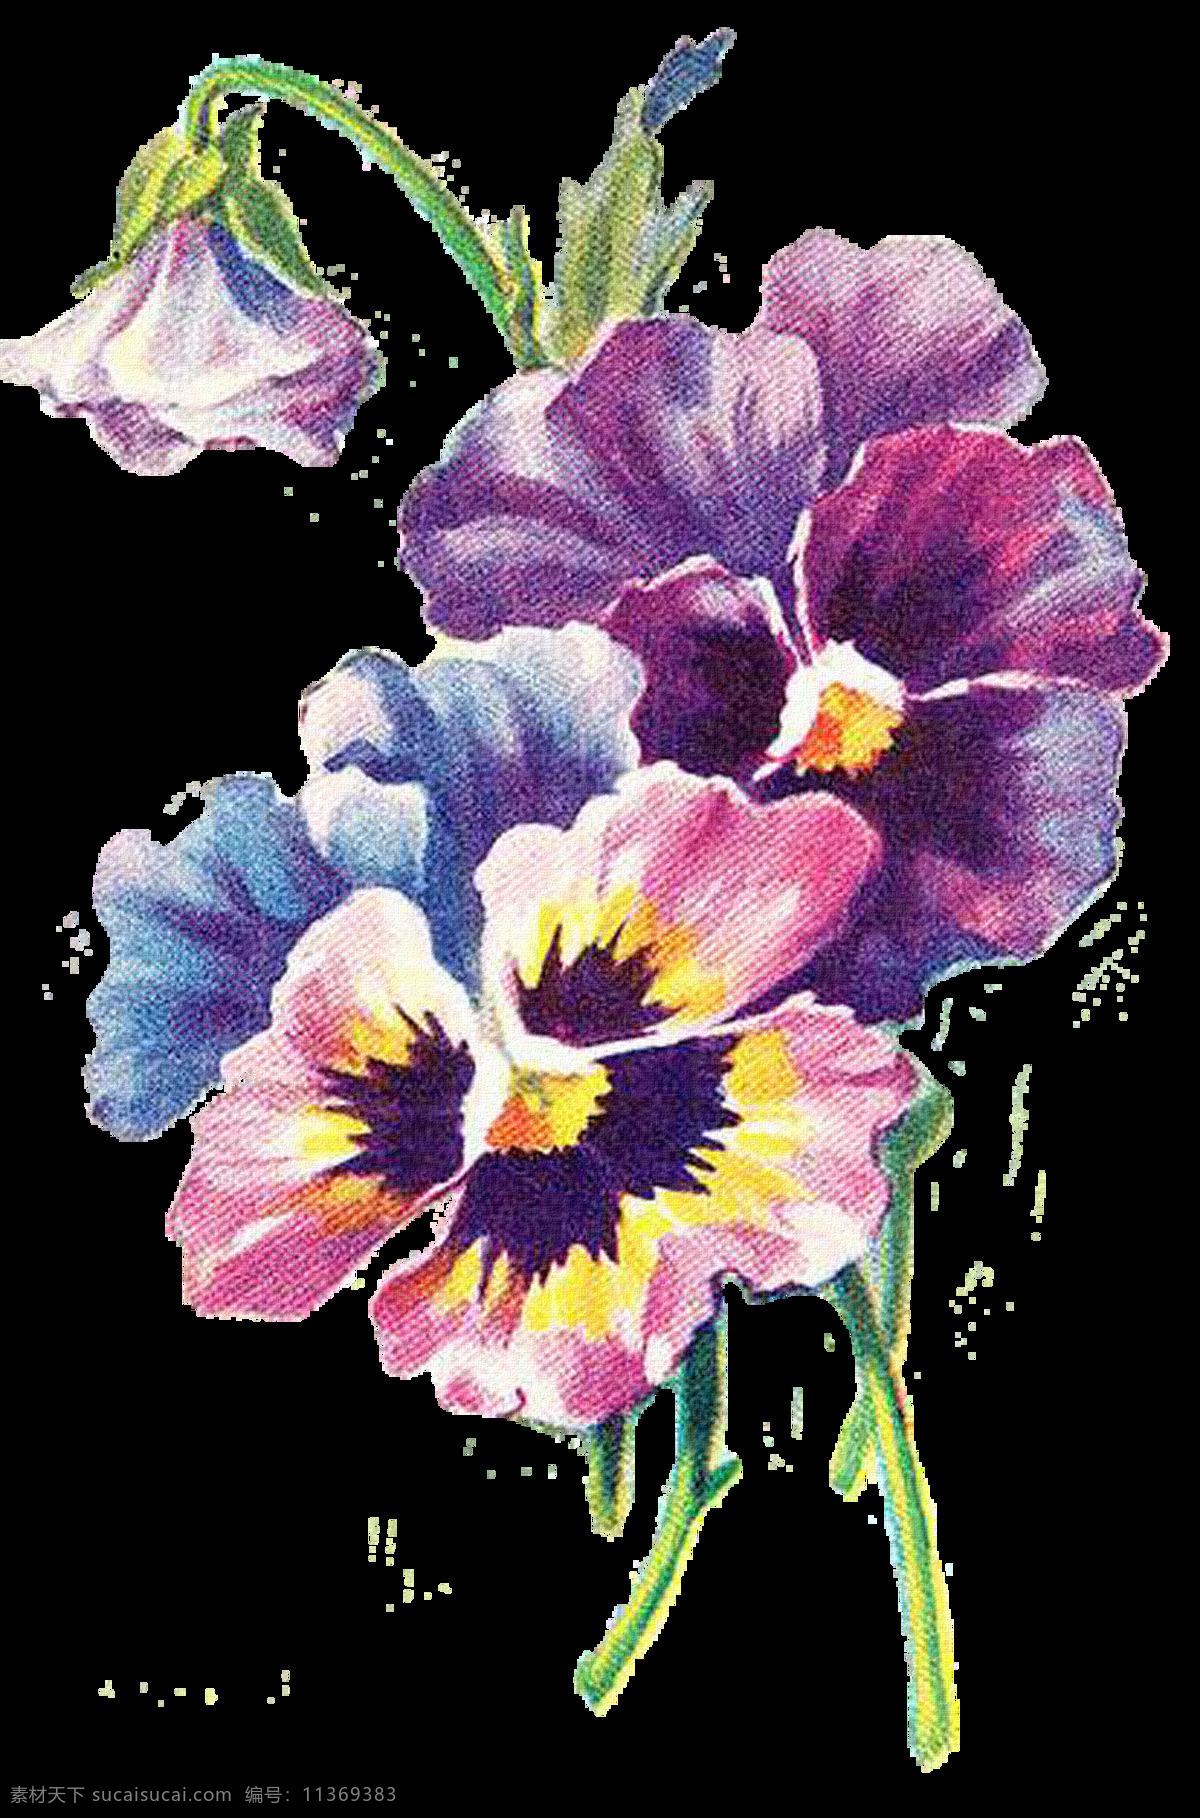 复古花朵 复古 花卉 设计素材 模板下载 复古花卉 手绘花朵 手绘花卉 复古紫色花朵 复古蓝色花朵 手绘植物 复古植物 静物花卉 绘画花朵 绘画书法 文化艺术 花朵素材